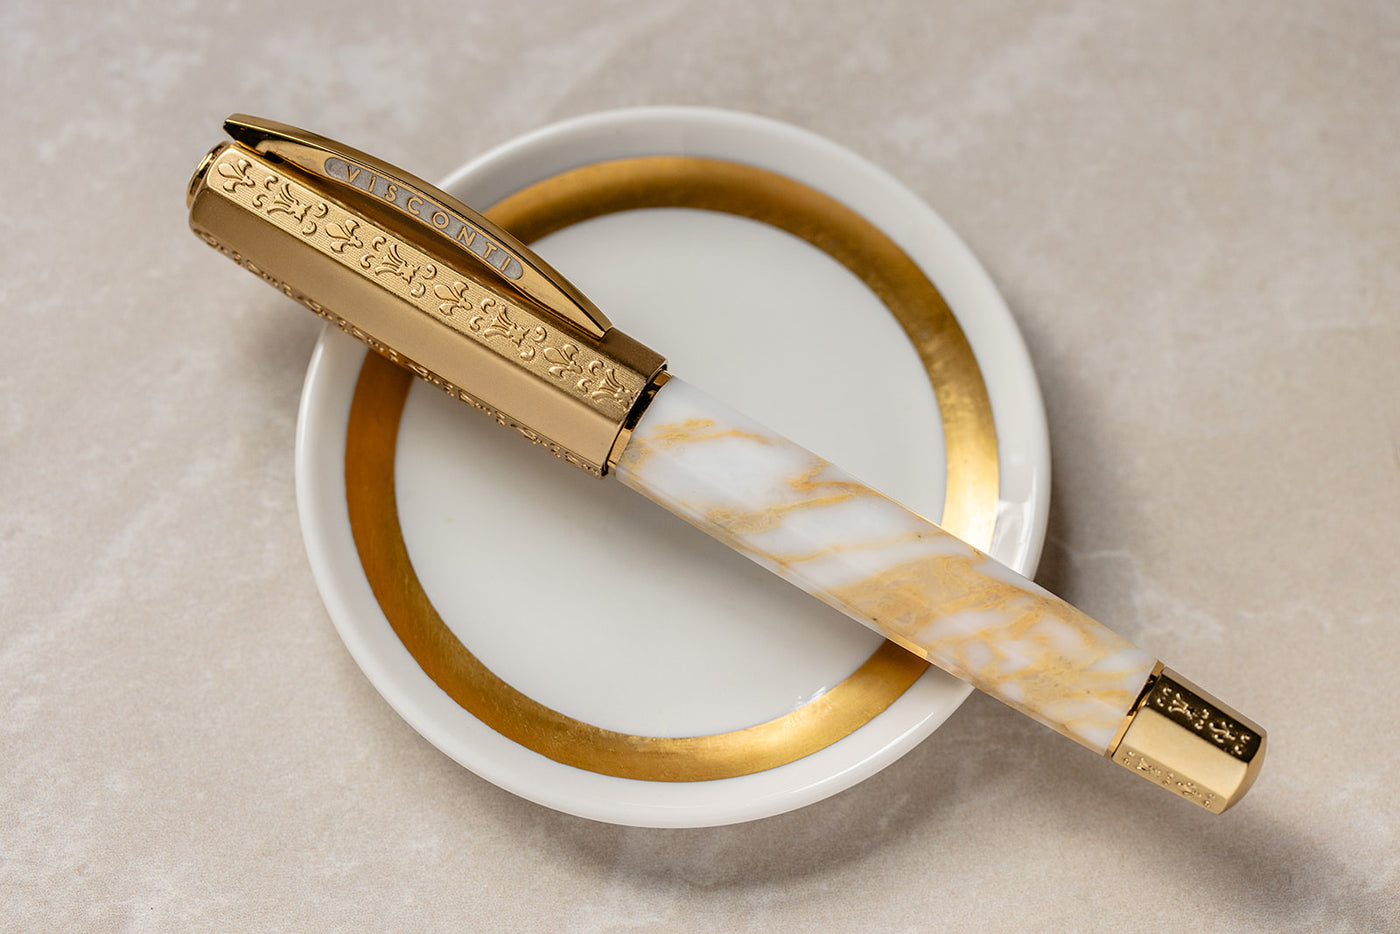 Visconti Medici il Magnifico Fountain Pen - Calacatta Gold (Limited Edition)